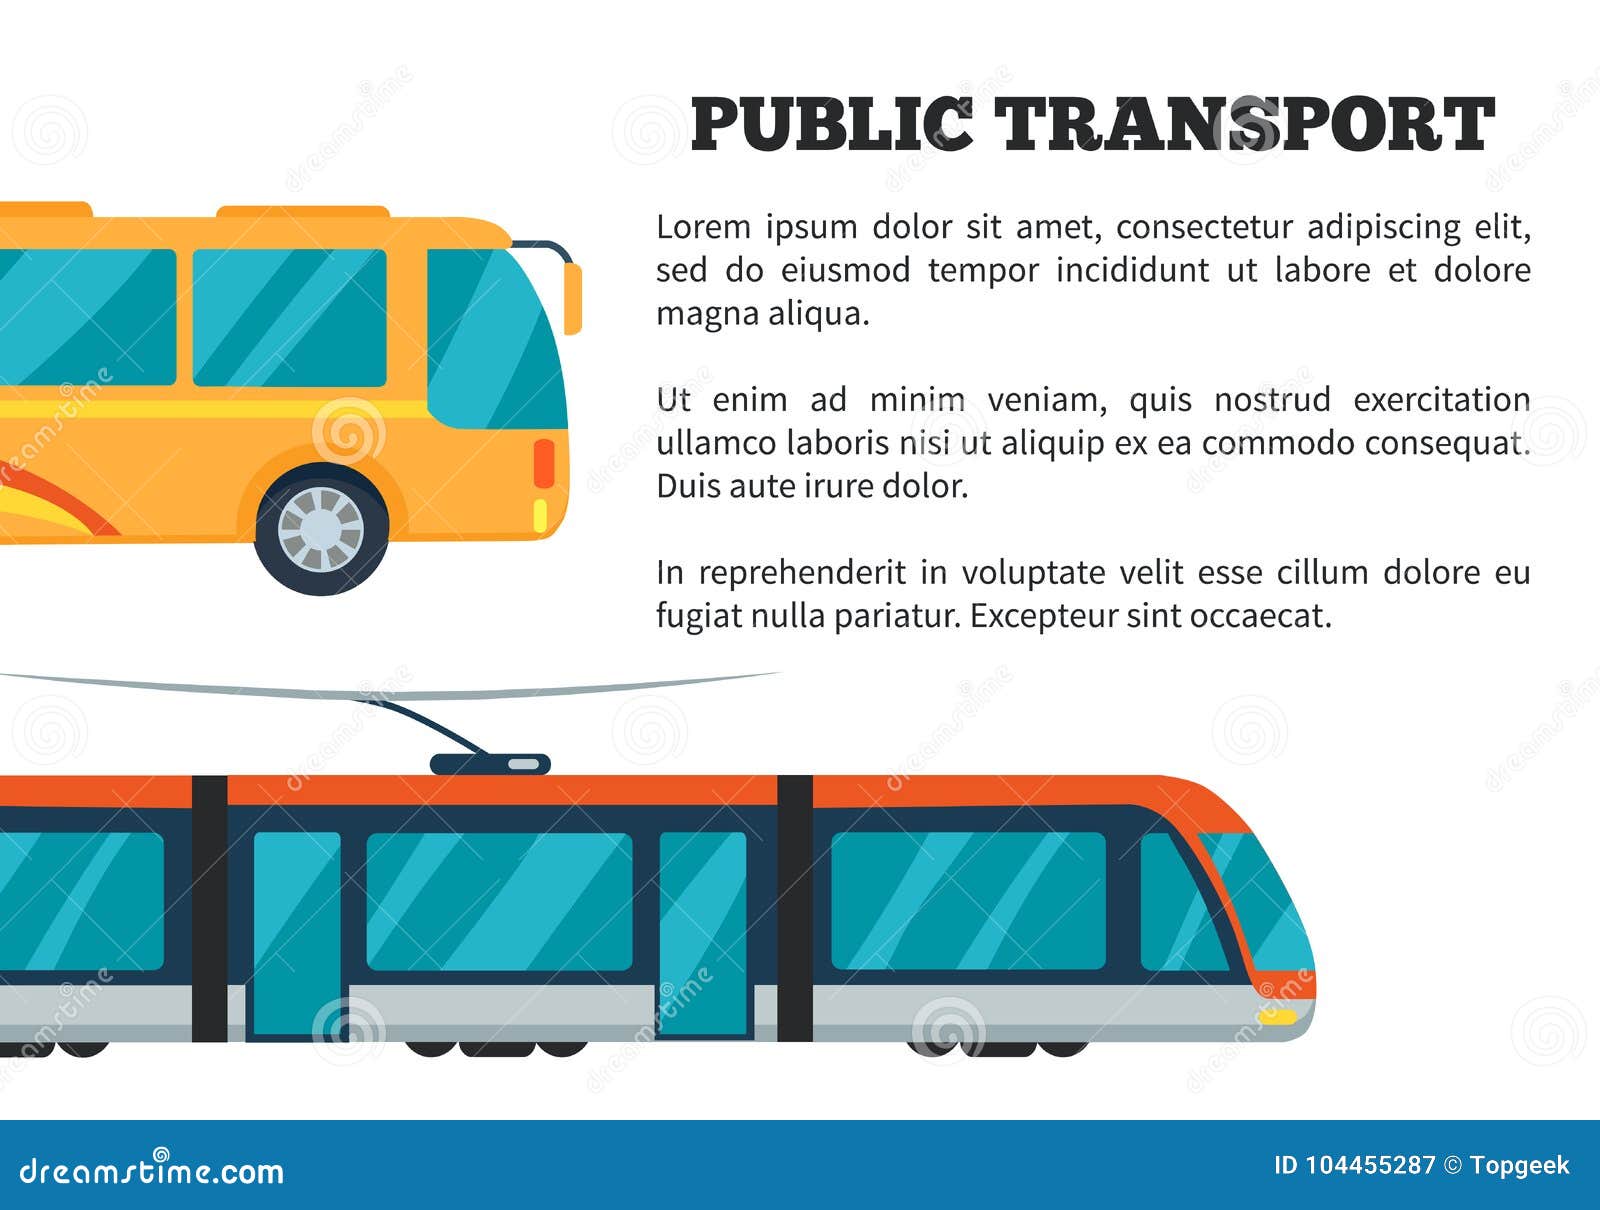 Public Transport Vector Illustration Stock Vector - Illustration of railway: 104455287